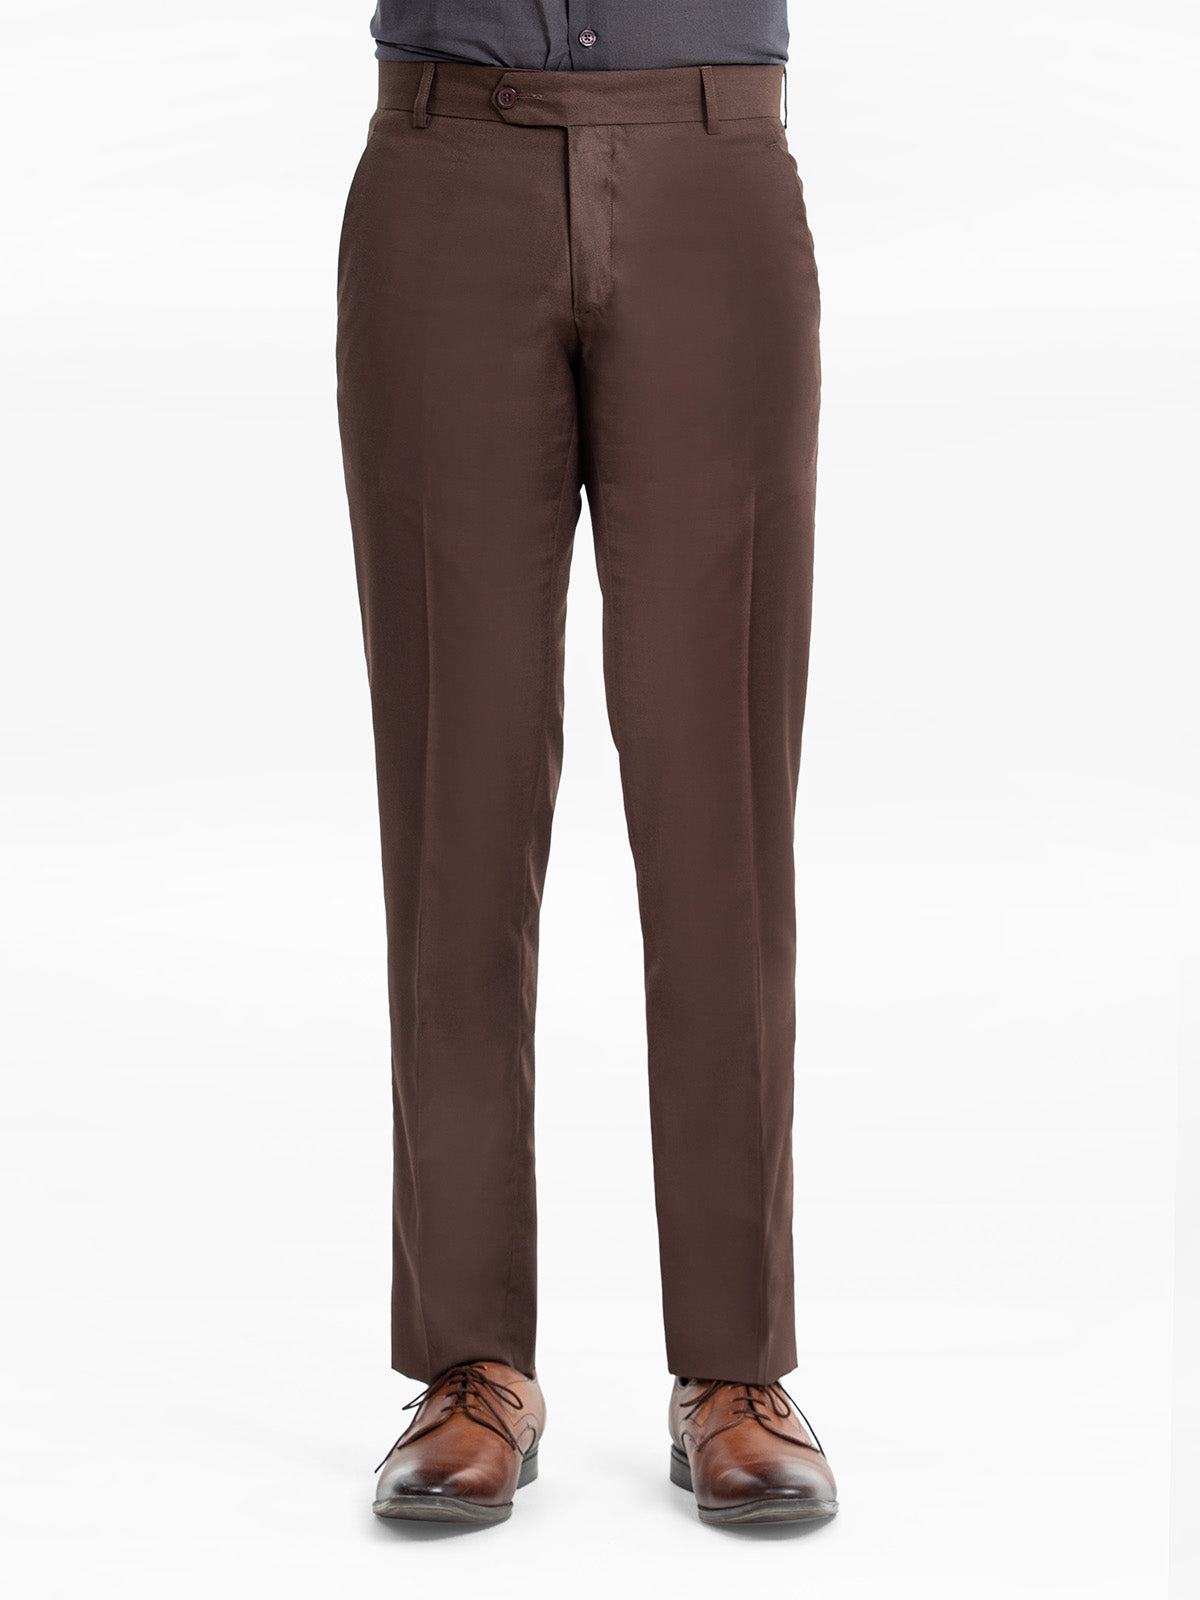 Snapklik.com : Mens Classic Fit Dress Pants Flat Front Straight Formal Pants  Wrinkle Free Expandable Waist Suit Pants Light Brown